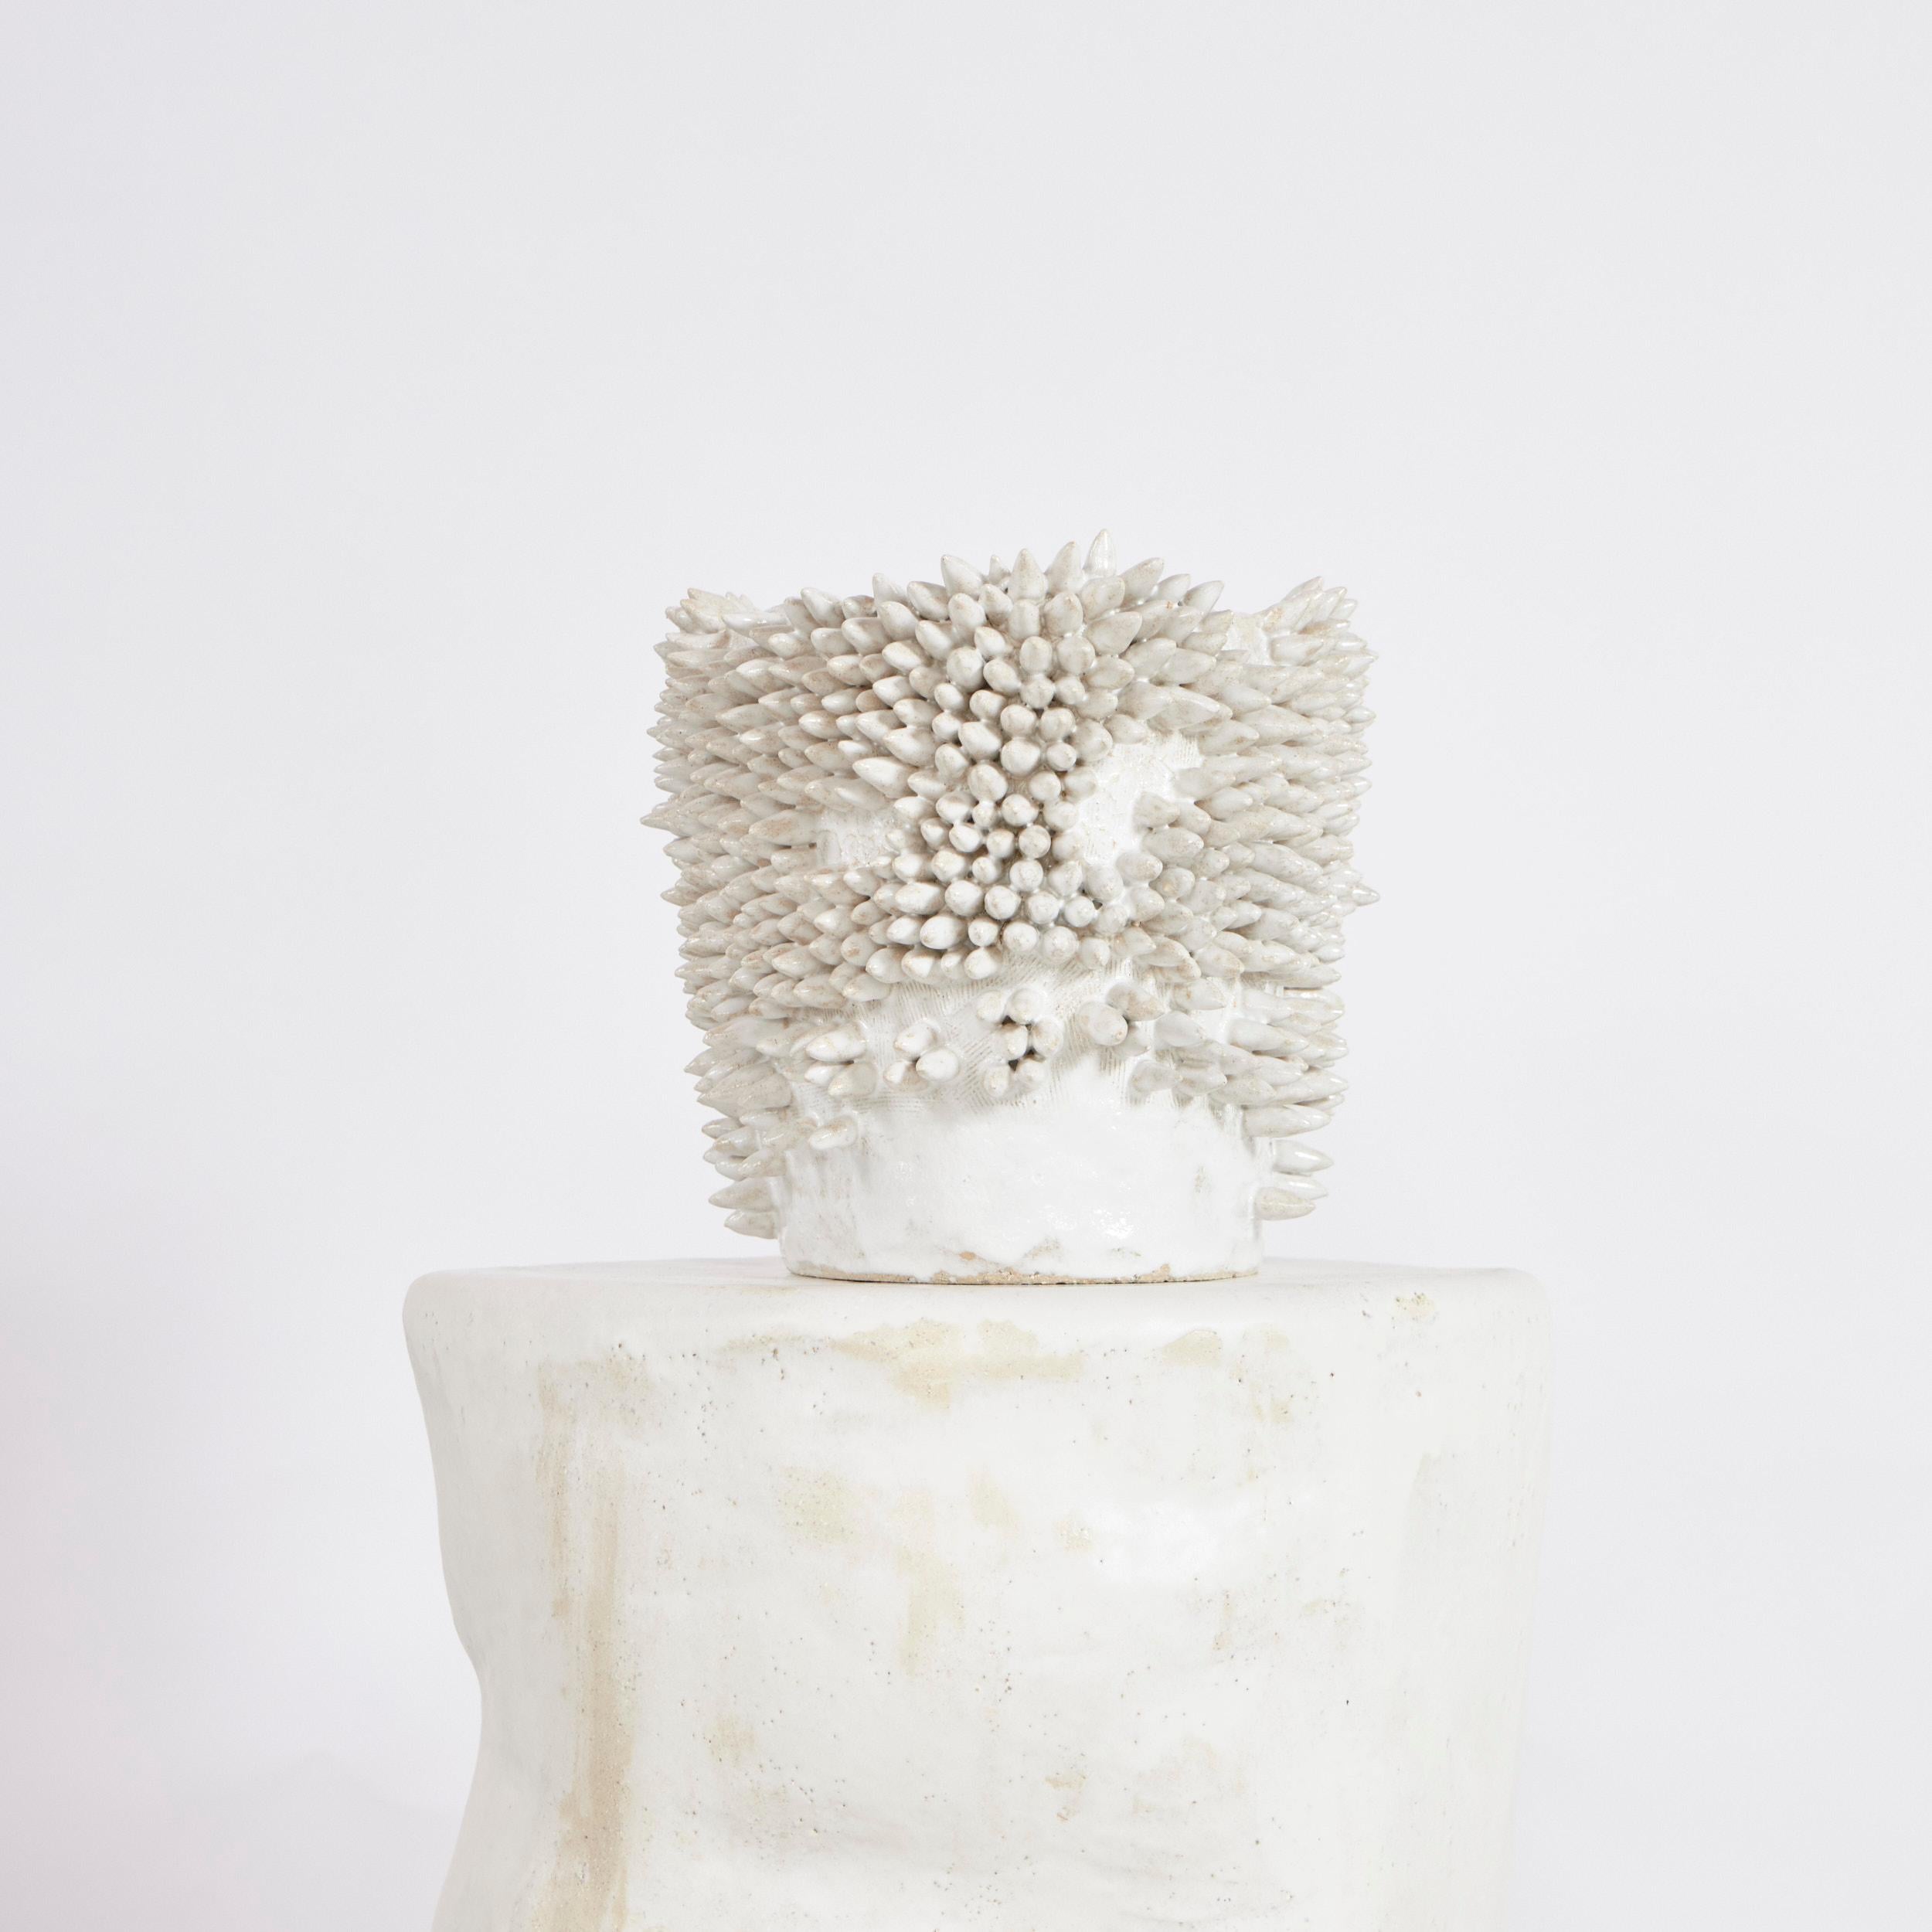 Appuntito Vase groß in Weiß
Entworfen von Projekt 213A im Jahr 2023

Handwerklich hergestellte Keramikvase, die in der eigenen Keramikwerkstatt des project 213A von erfahrenen Handwerkern hergestellt wird. Die gesamte Vase ist mit